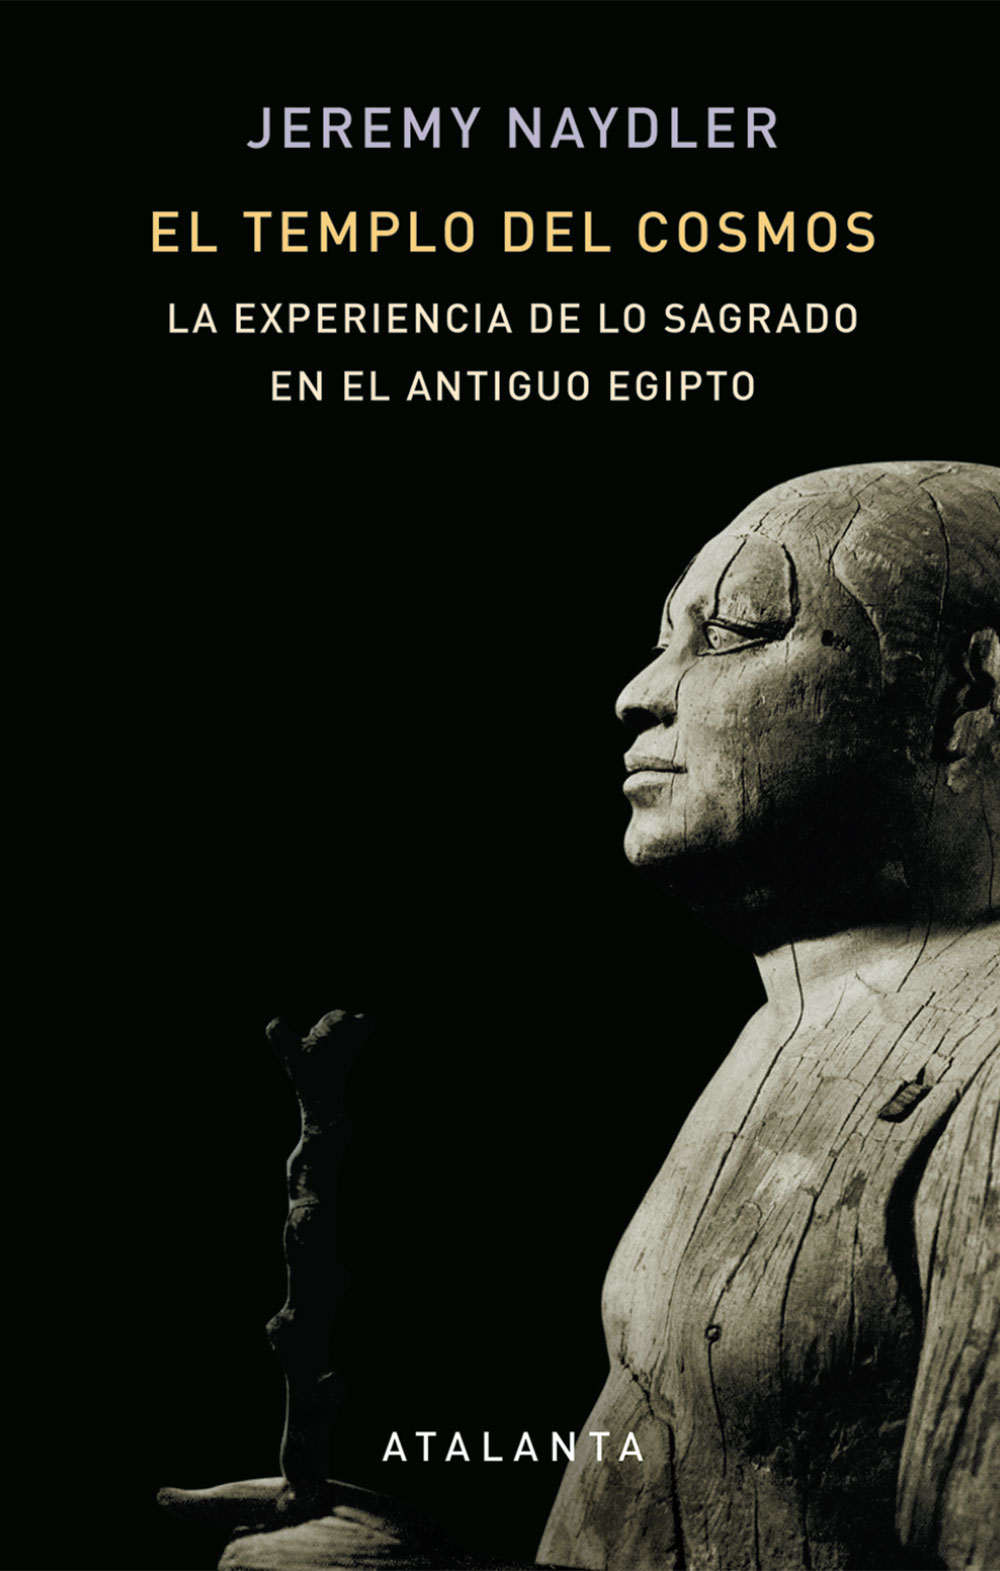 Libros acerca de historia y cultura egipcia antigua. 125-naydler-cubierta-EL-TEMPLO-DEL-COSMOS